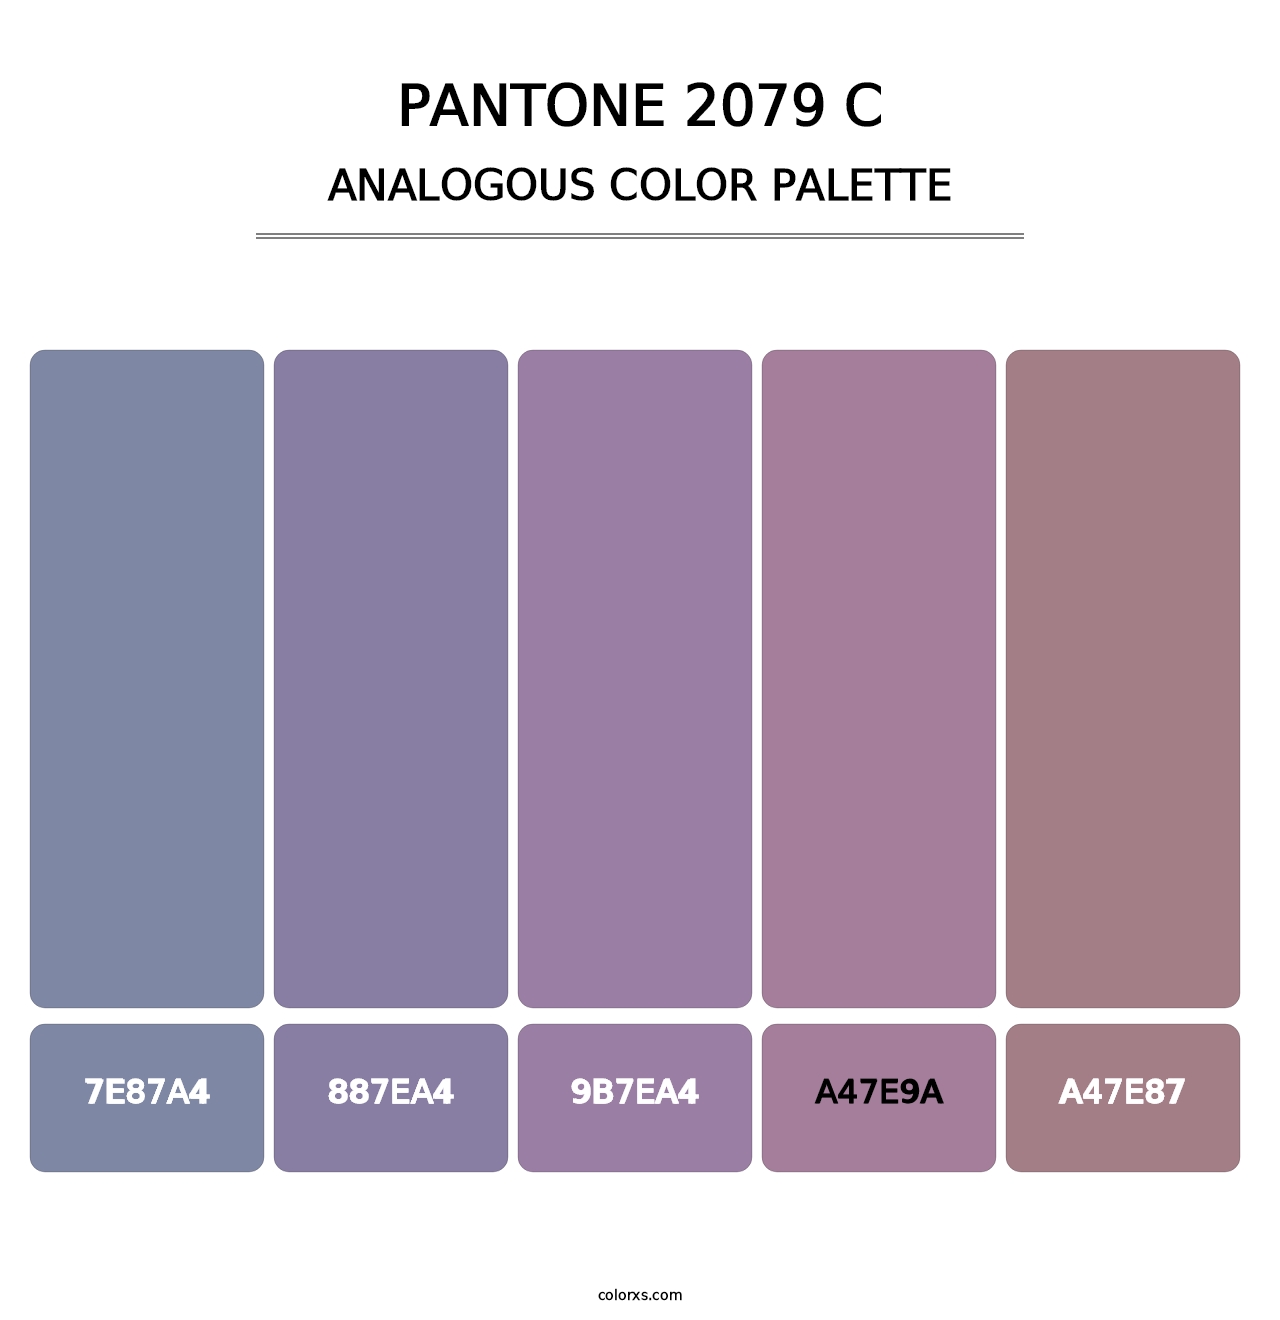 PANTONE 2079 C - Analogous Color Palette